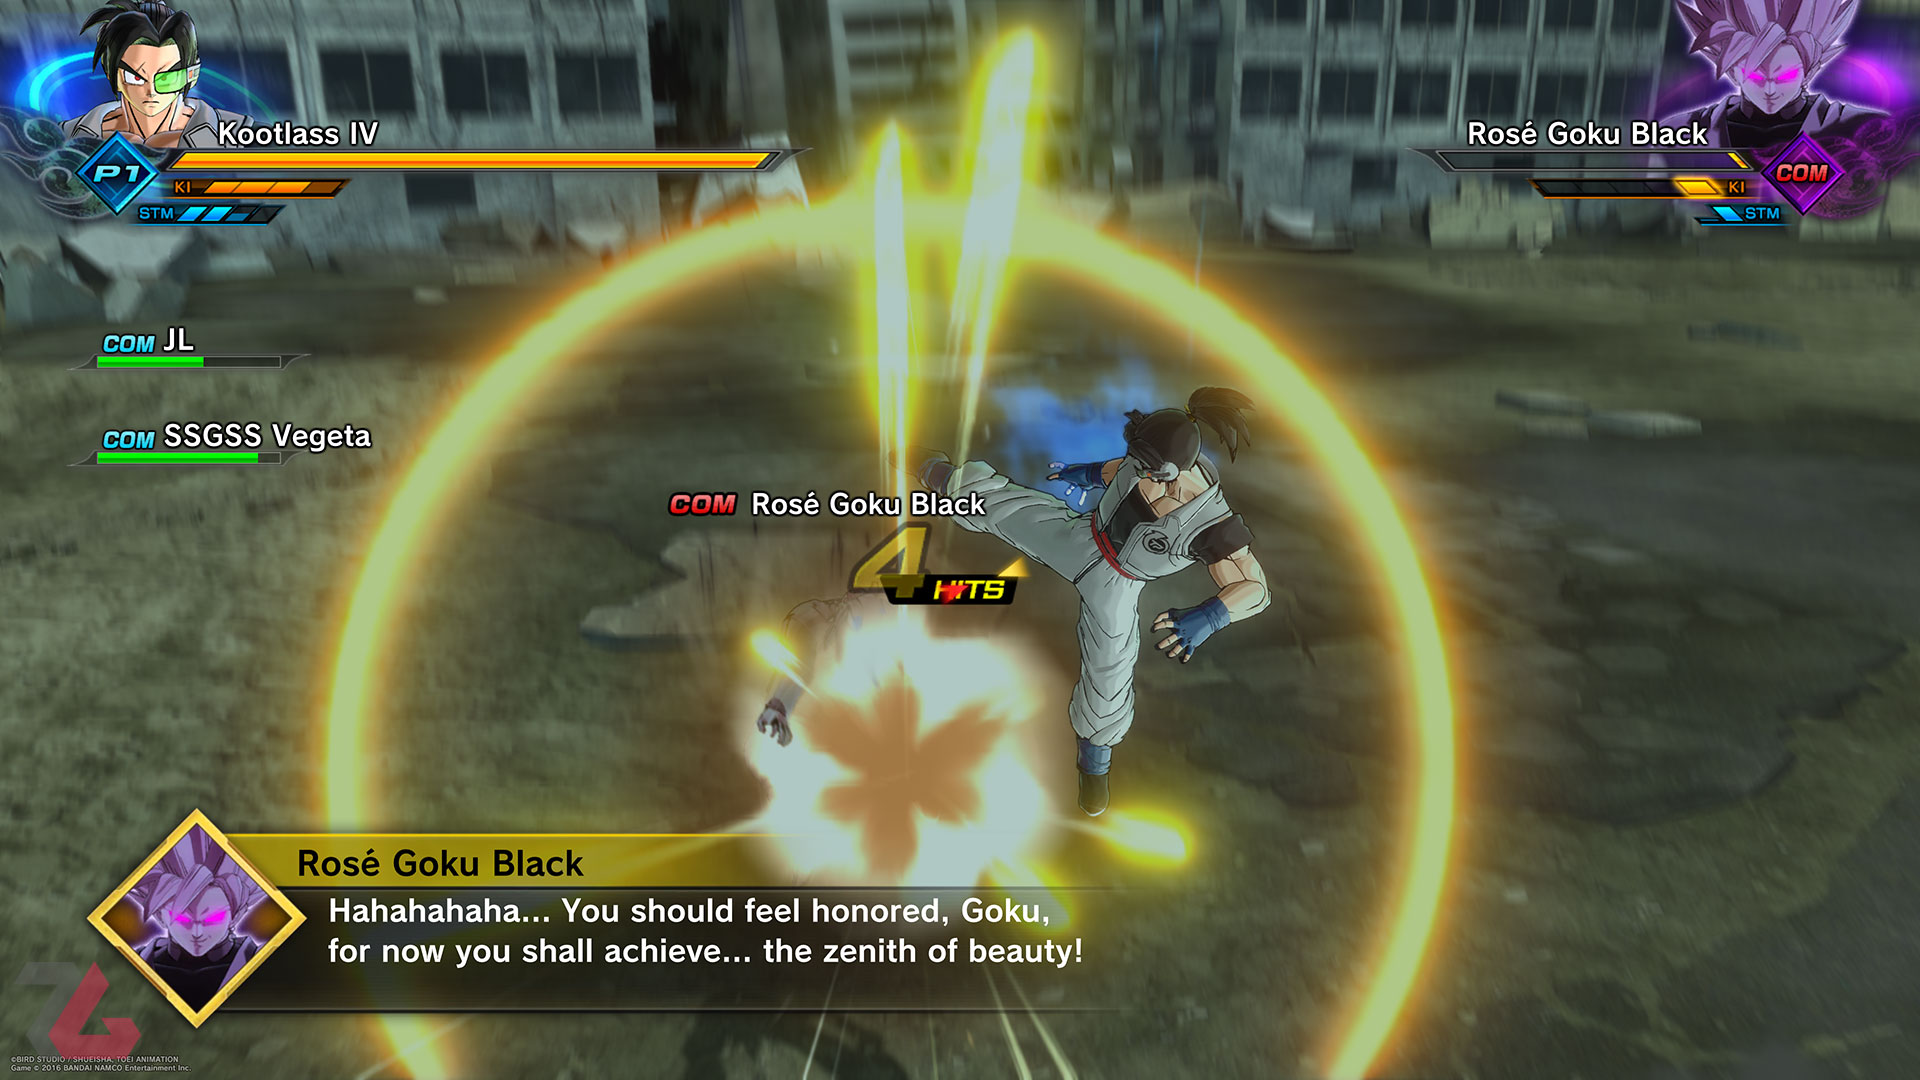 نبرد با رُز گوکو بلک در بازی Dragon Ball Xenoverse 2